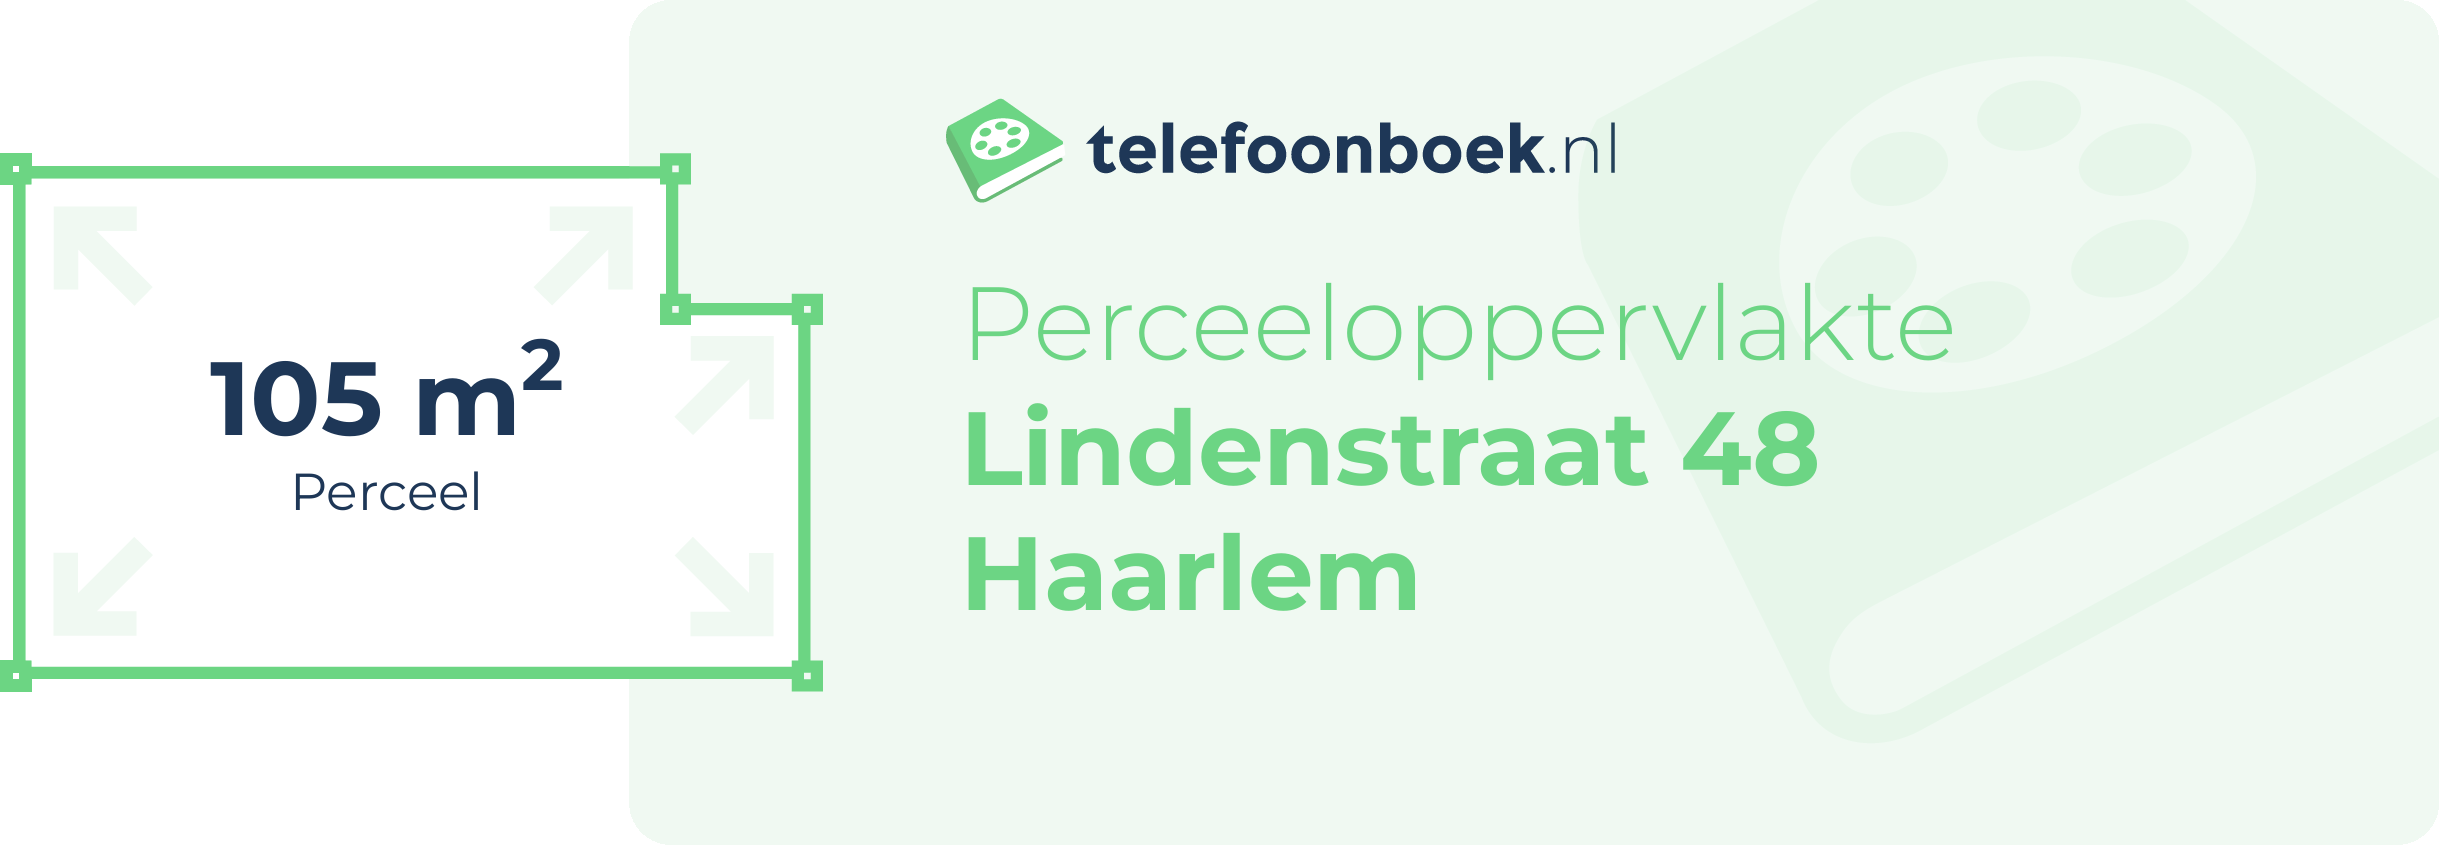 Perceeloppervlakte Lindenstraat 48 Haarlem